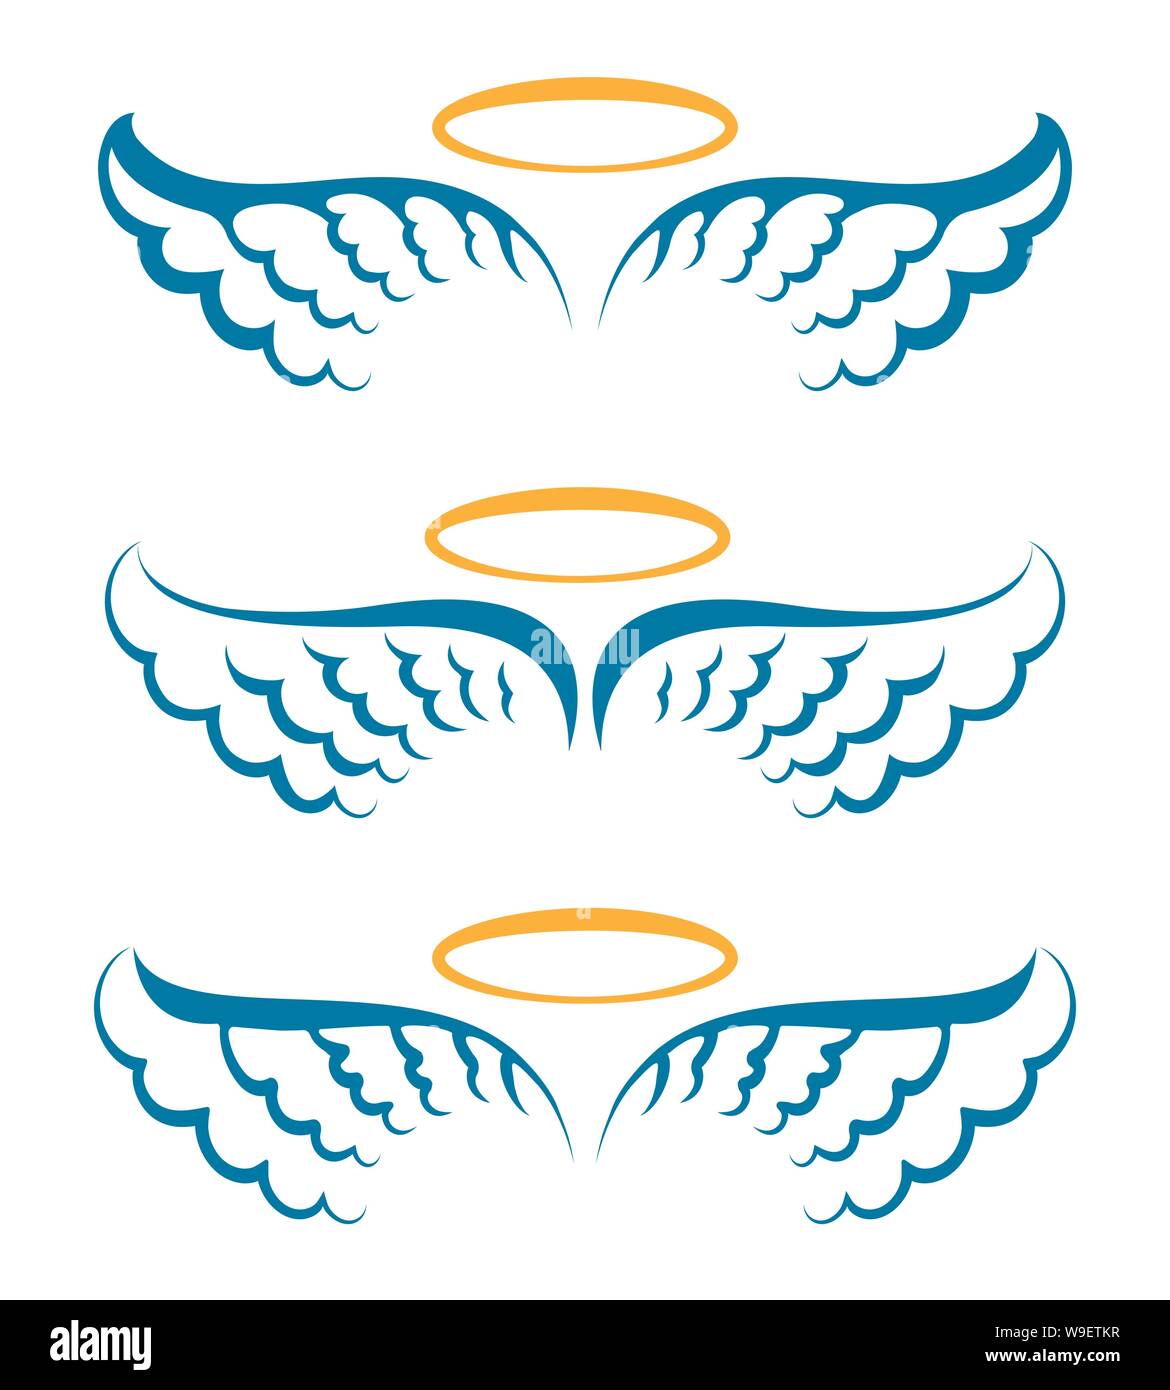 Heaven angeles wings Stock Vector